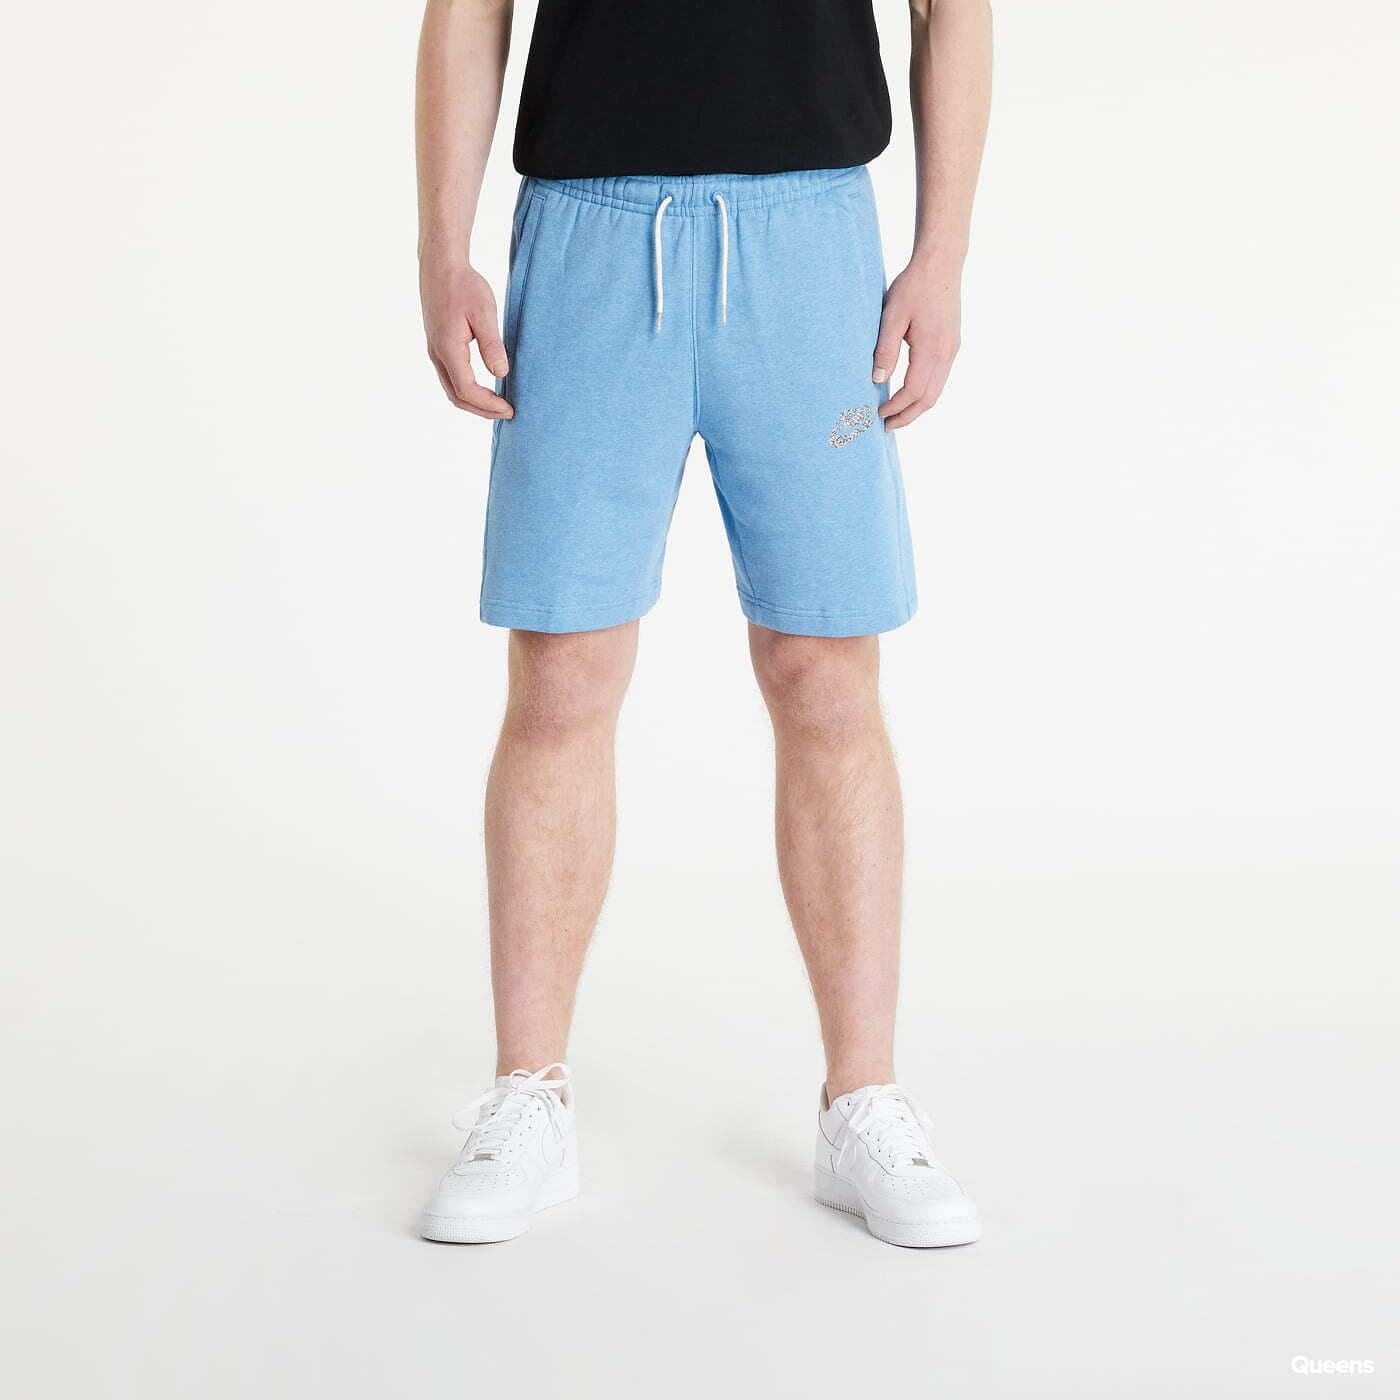 Šortky Nike Sportswear Men's Fleece Shorts Blue